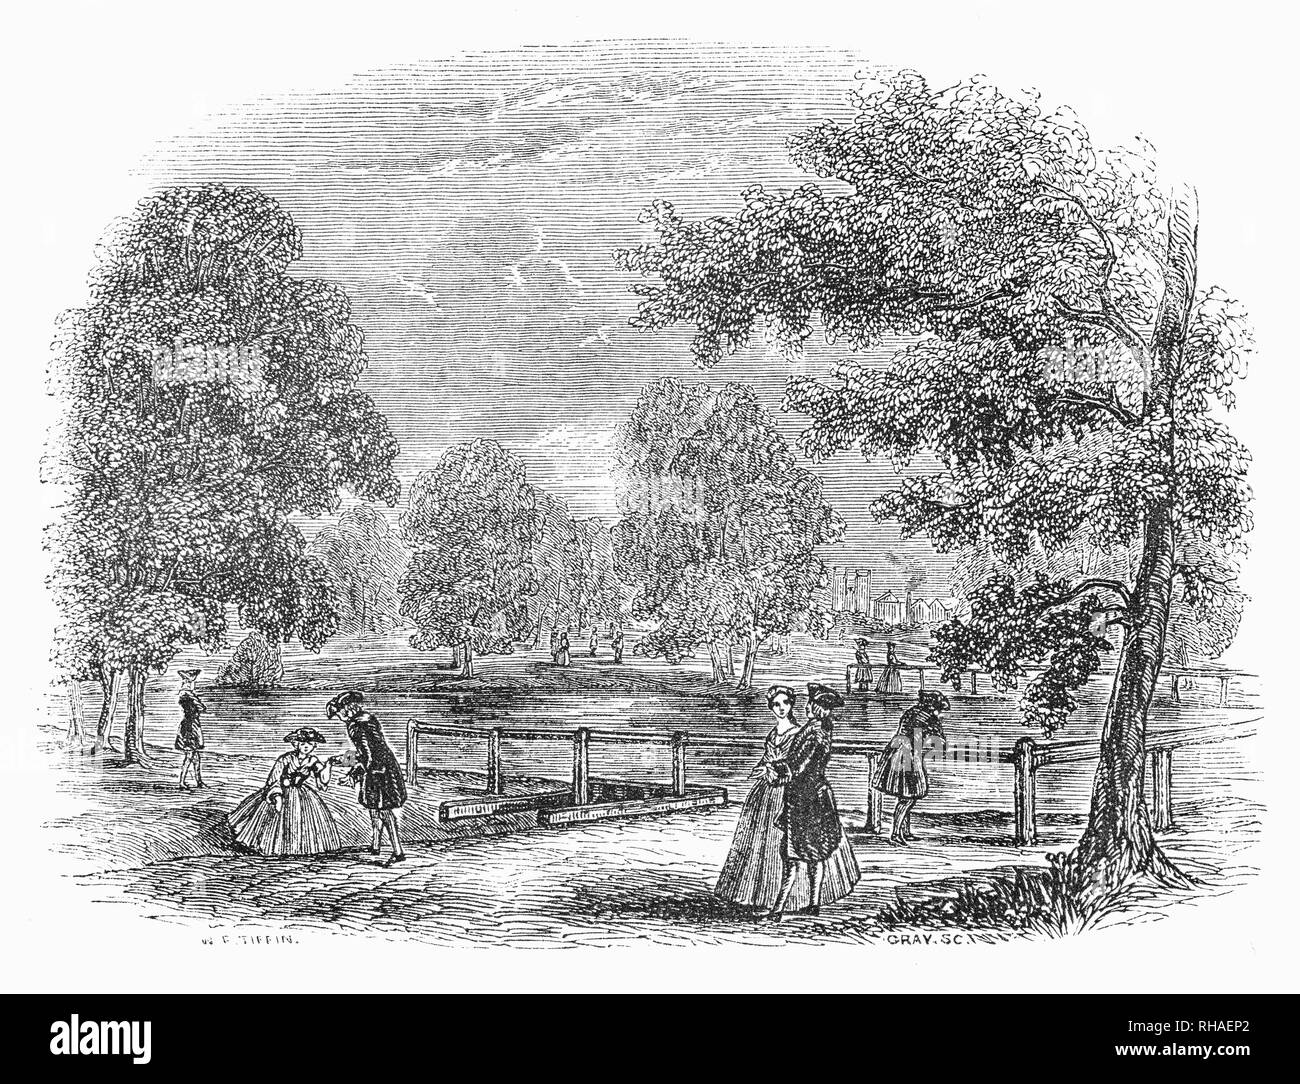 Rosamonds promenading visiteurs autour de l'Étang St James Park, Londres, Angleterre, le plus vieux parc Royal de Londres. C'est Charles II qui a ordonné le parc d'être réaménagé avec des avenues d'arbres plantés et les pelouses établies. Le Roi ouvre le parc au public et était un visiteur fréquent, nourrir les canards et les rencontres avec ses sujets. Au cours de la période de Hanovre, le parc a changé pour toujours lorsque John Nash remanié dans un style plus romantique quand le canal a été transformé en un lac naturel. Banque D'Images